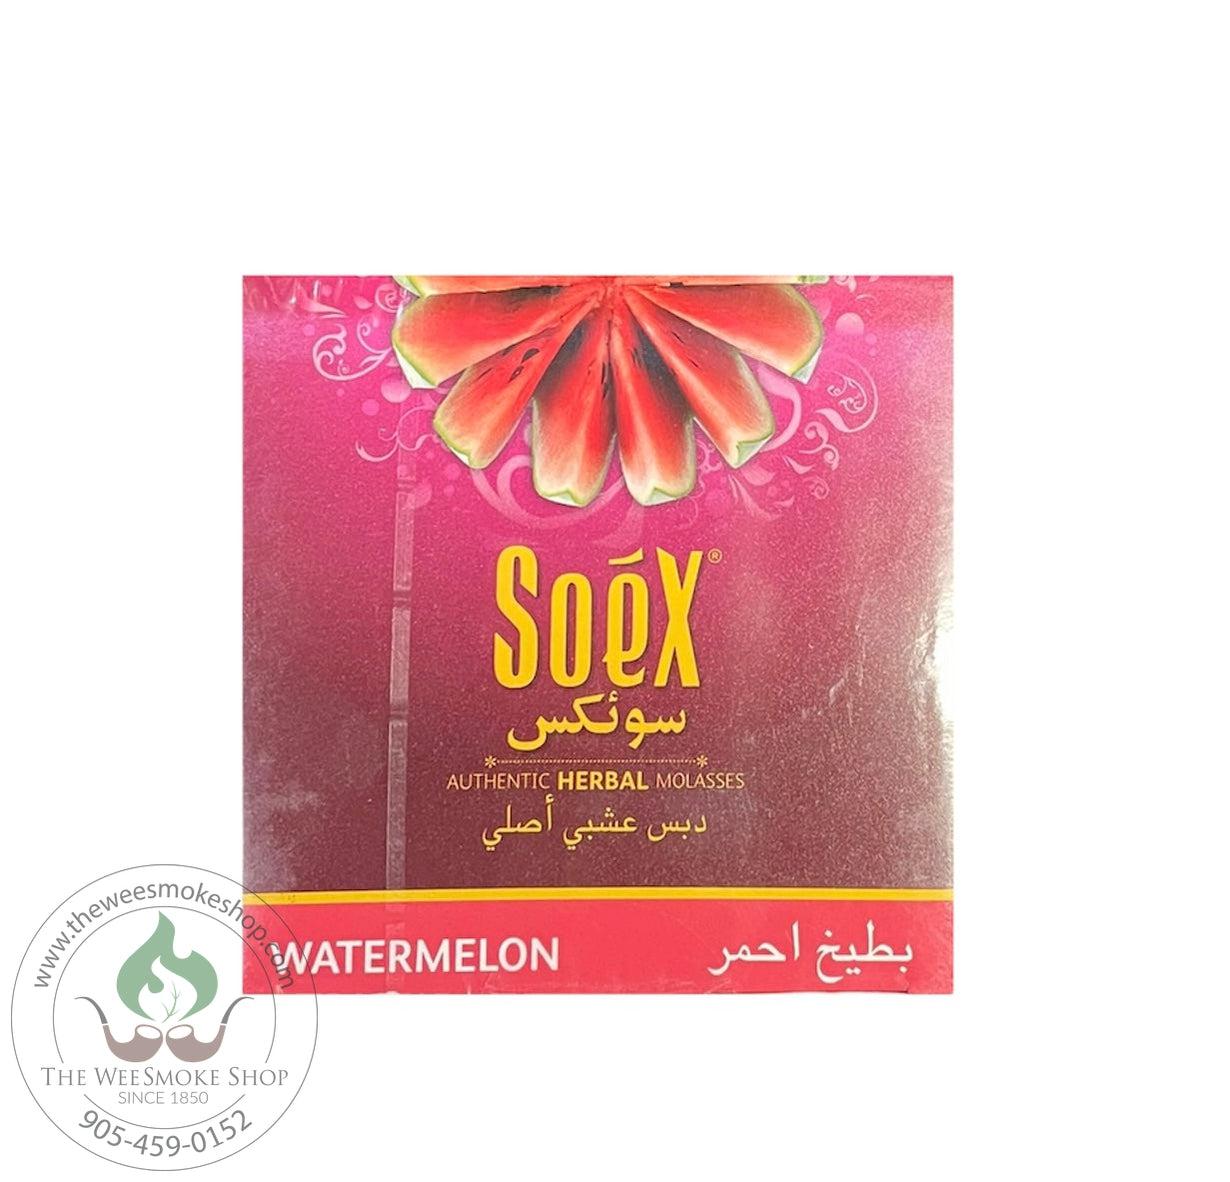 Watermelon Soex Herbal Molasses (250g)-Hookah accessories-The Wee Smoke Shop